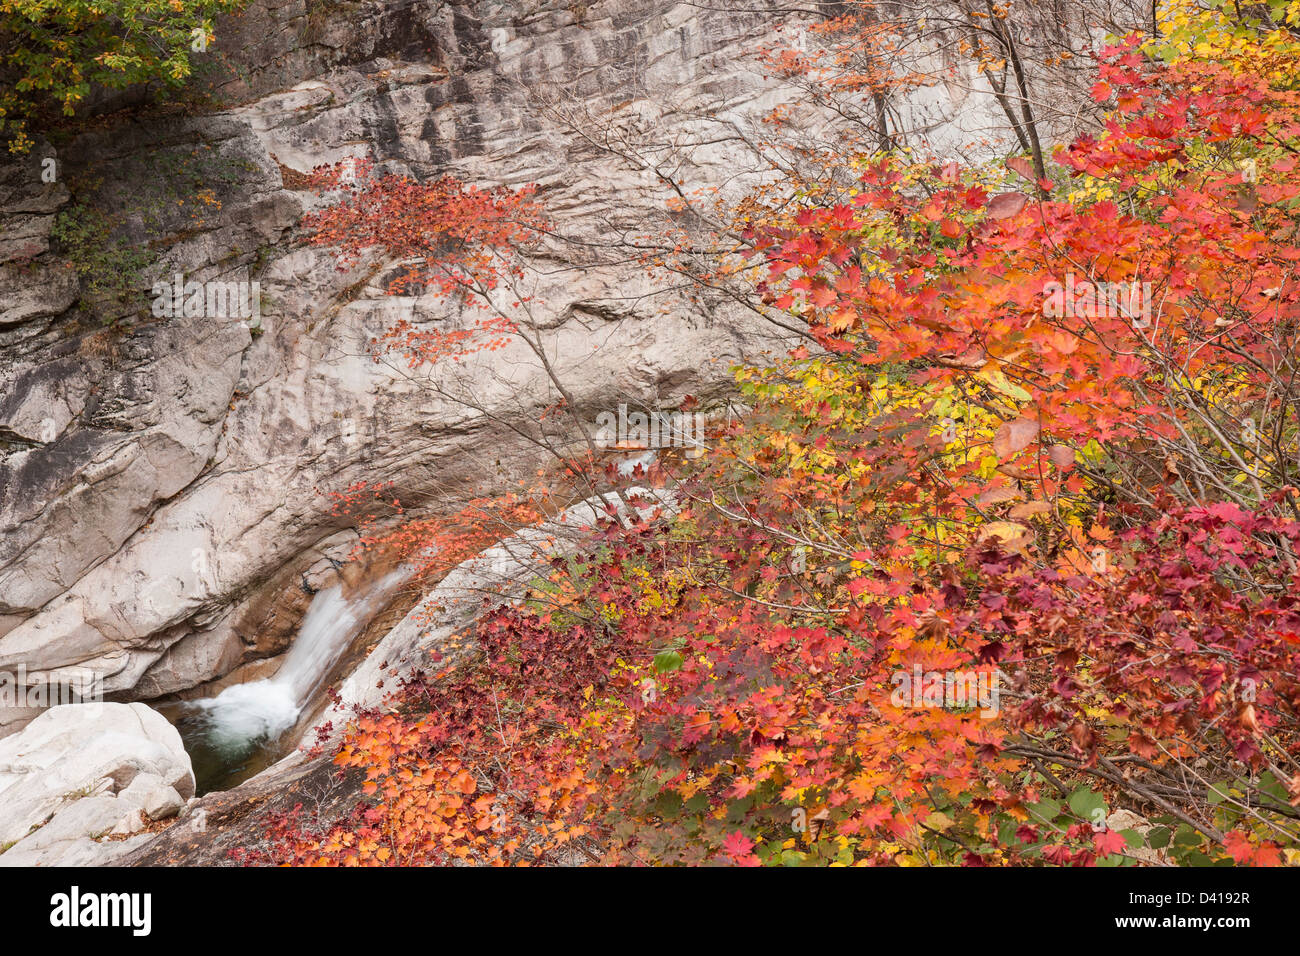 Cheonbul-dong Valley stream et couleurs d'automne, le Parc National de Seoraksan, Corée du Sud Banque D'Images